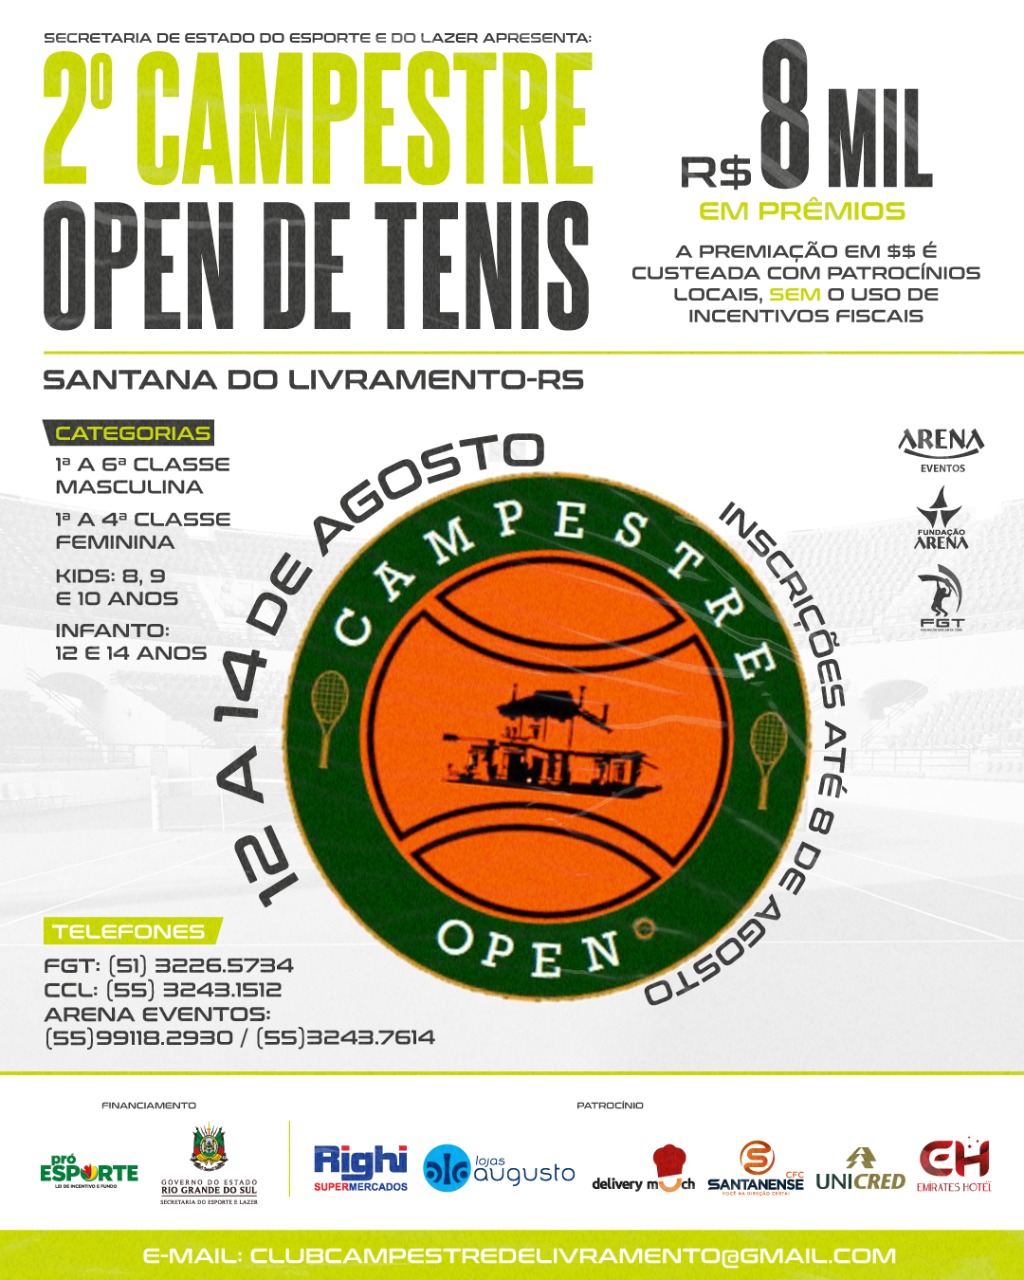 Cartaz de torneio de tênis